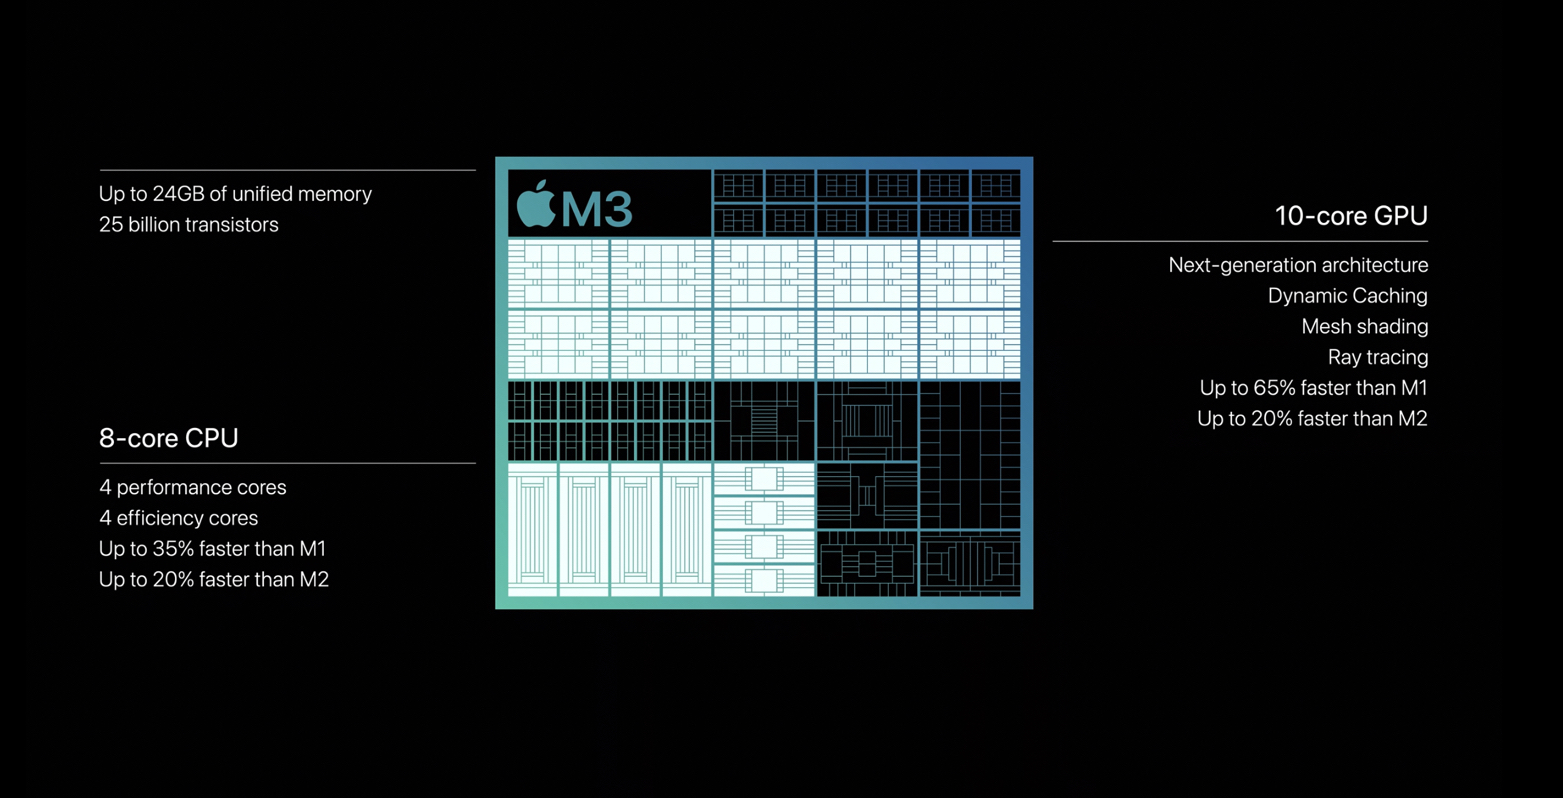 I nuovi chip M3, M3 Pro e M3 Max